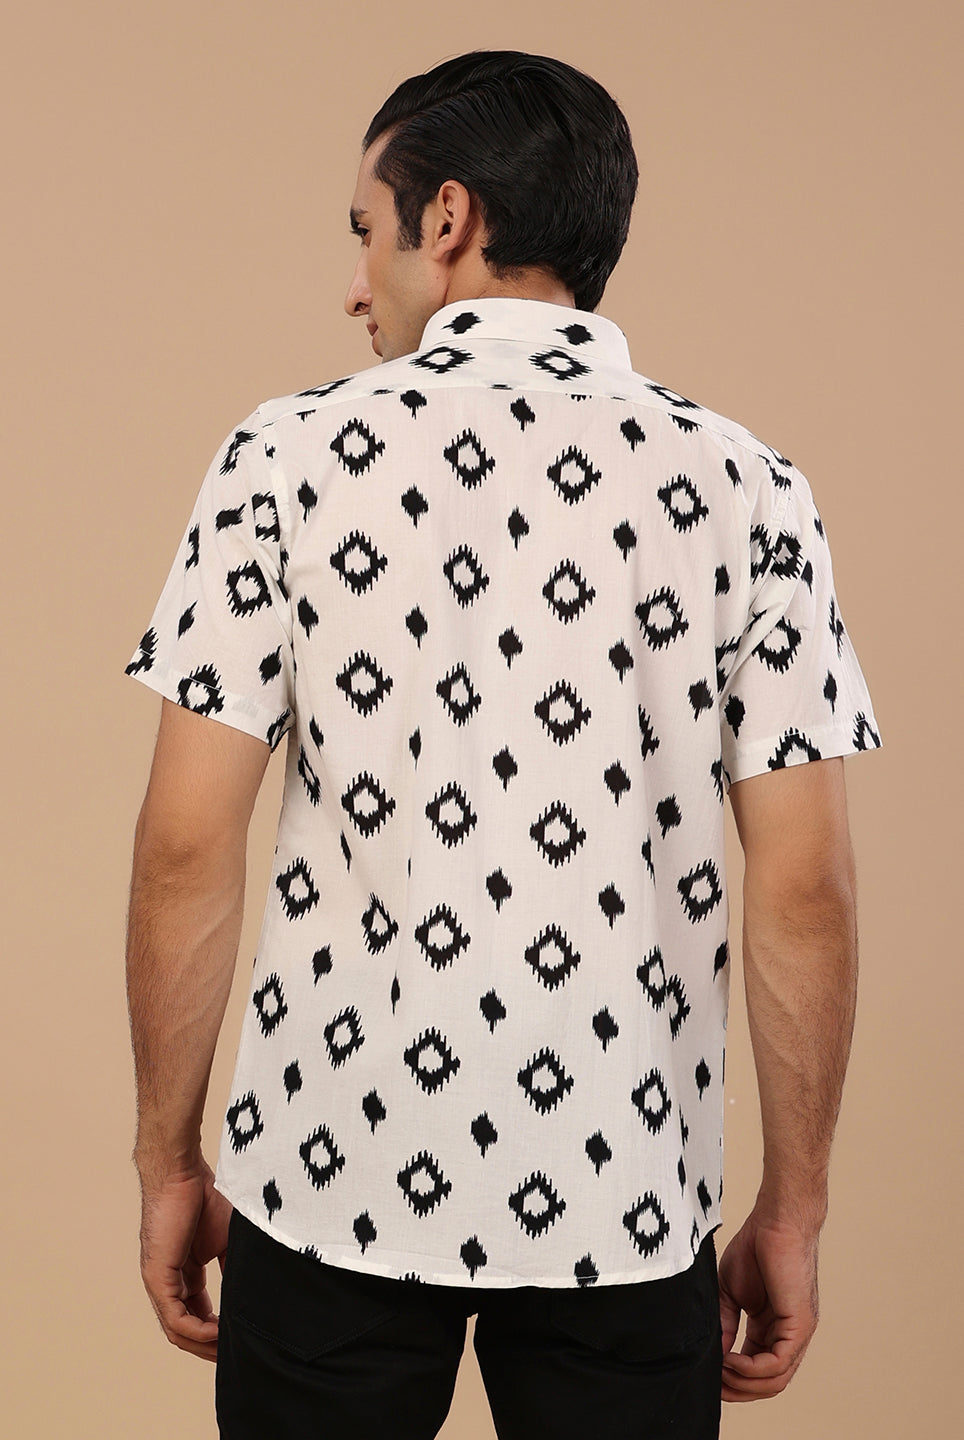 block printed shirts